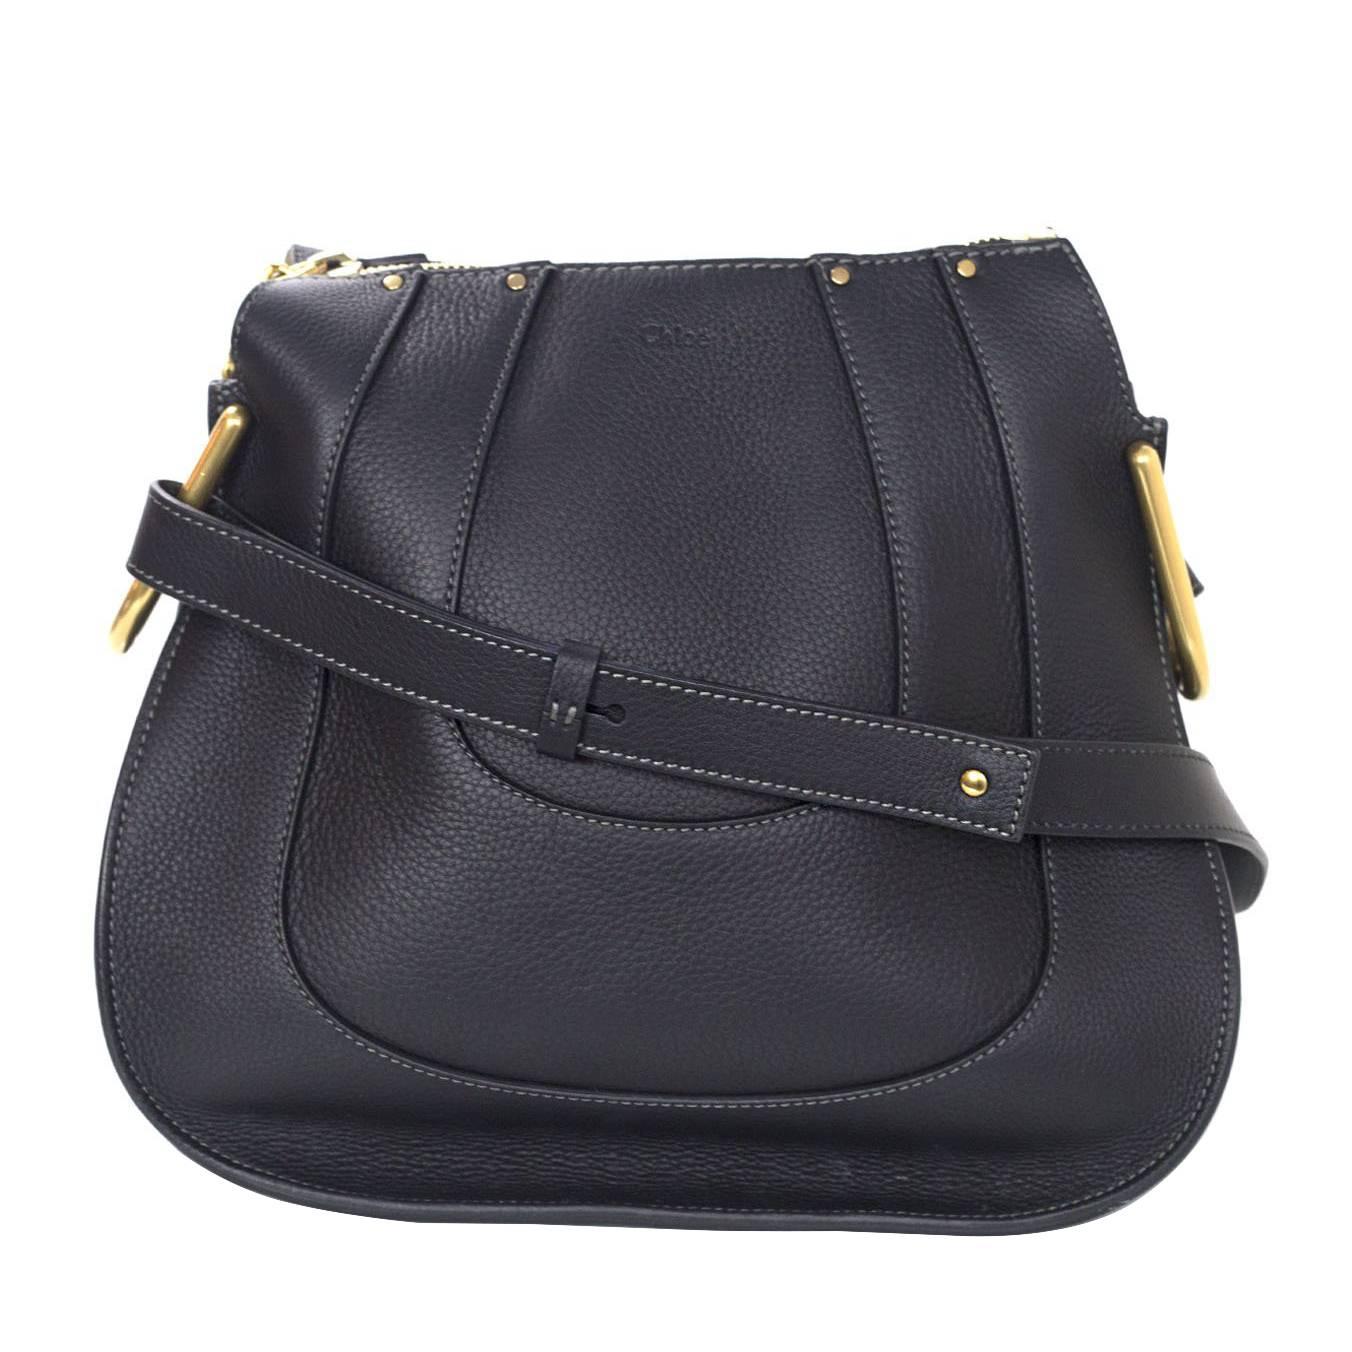 Chloe 2016 Black Leather "Hayley" Shoulder Bag rt. $1, 890